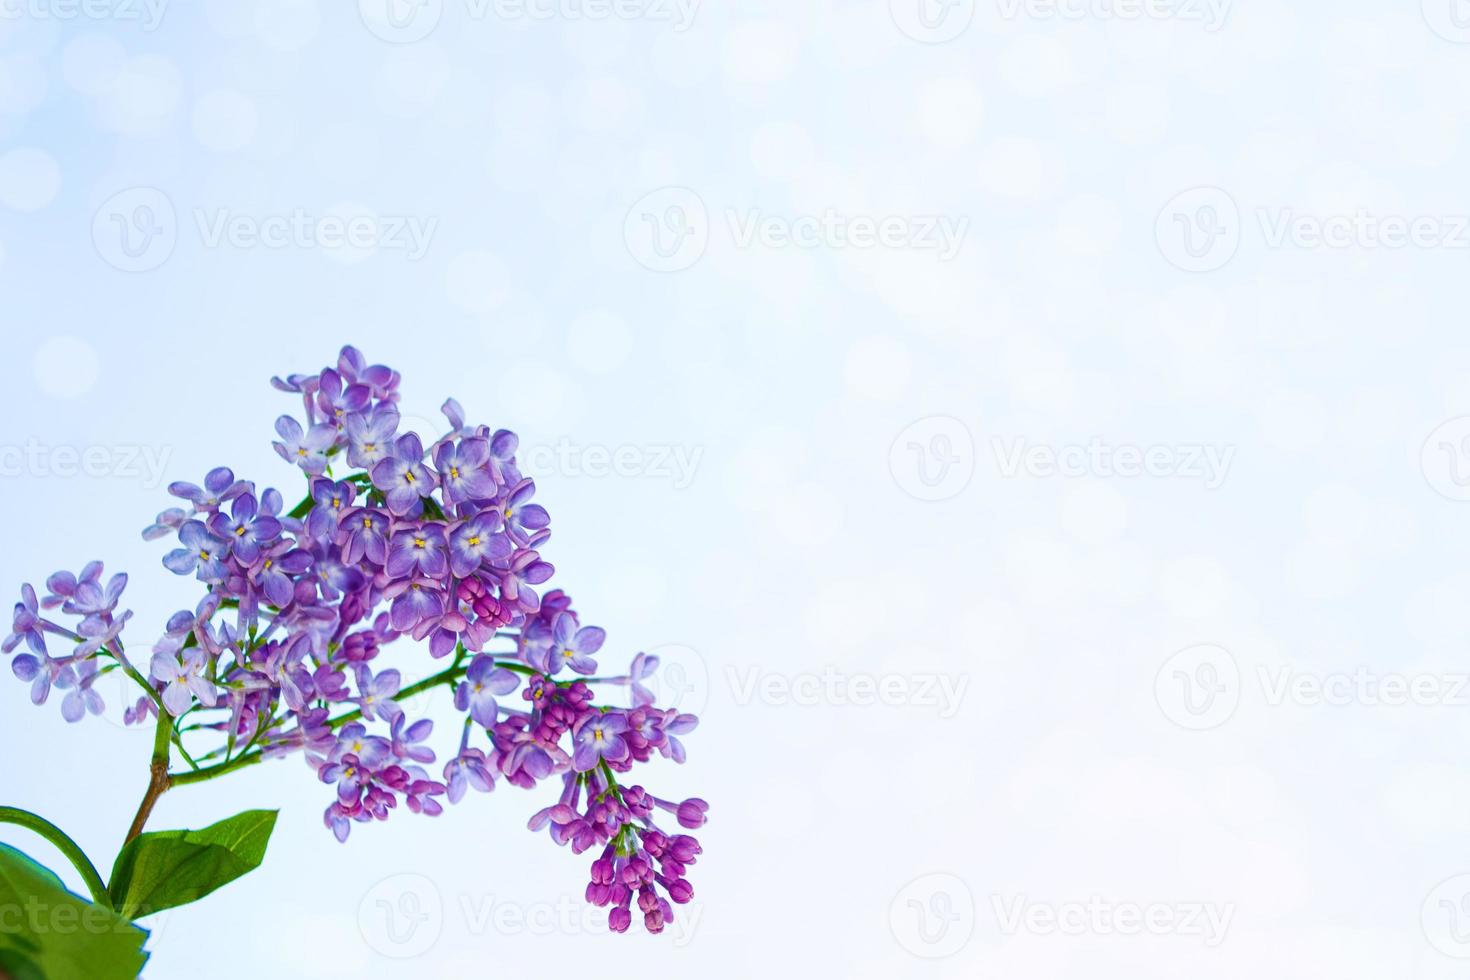 fiori lilla luminosi e colorati foto